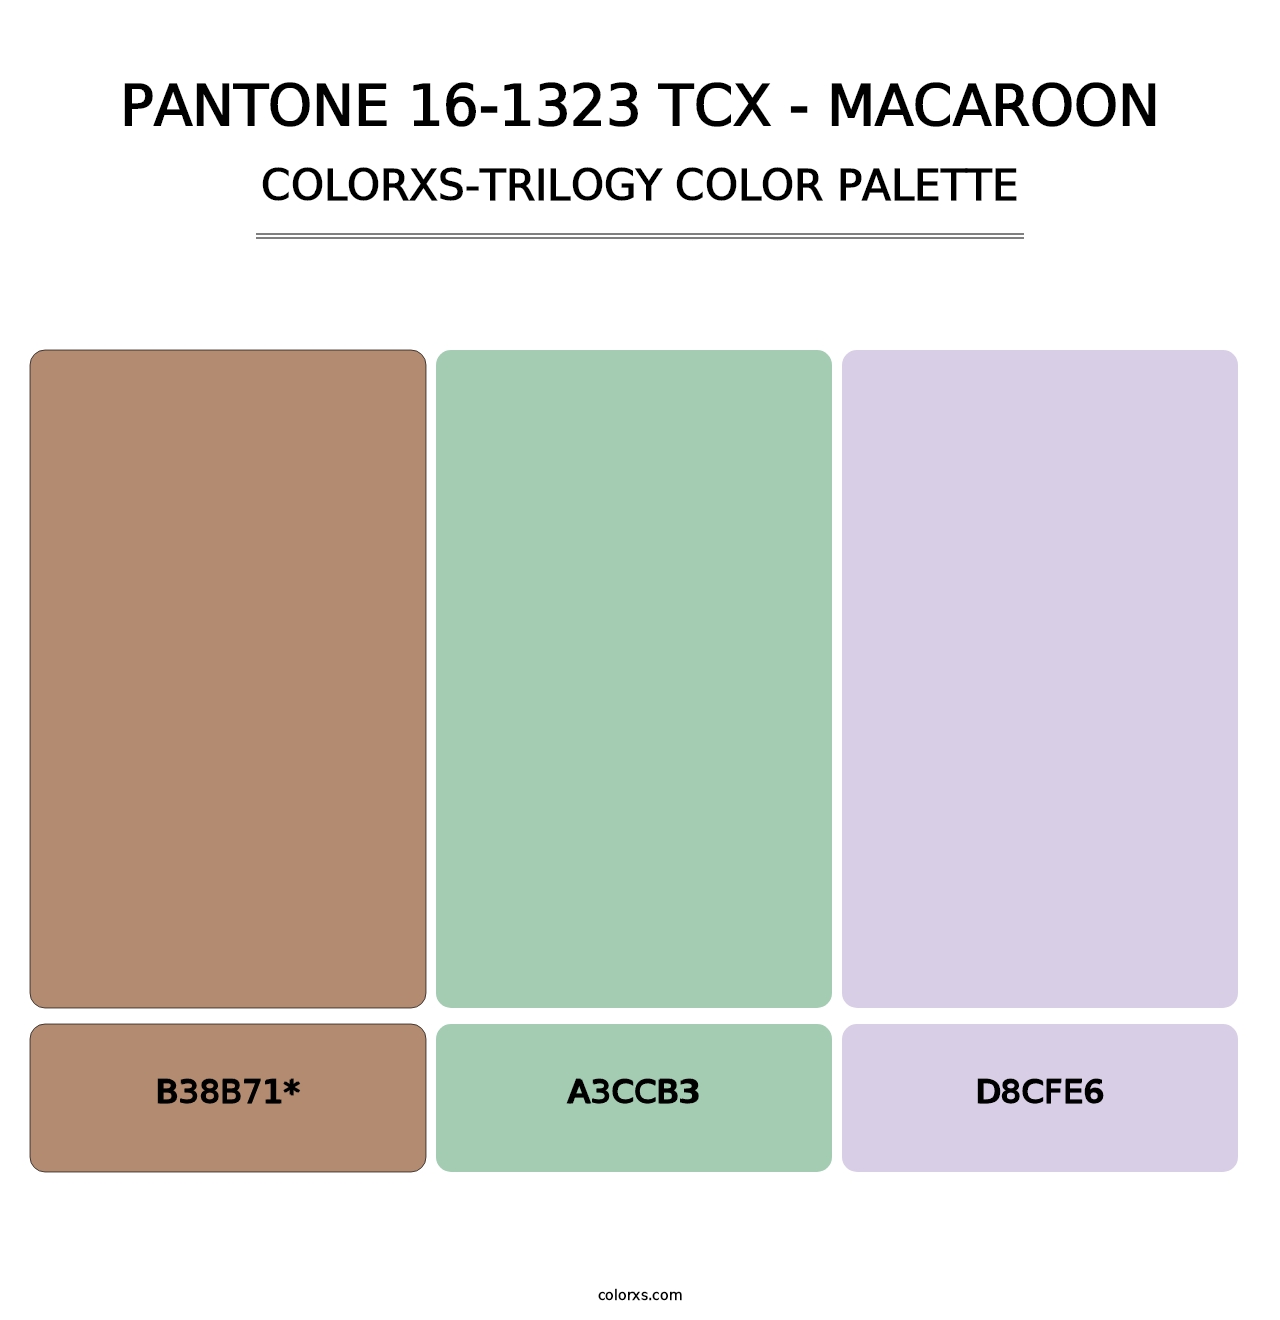 PANTONE 16-1323 TCX - Macaroon - Colorxs Trilogy Palette